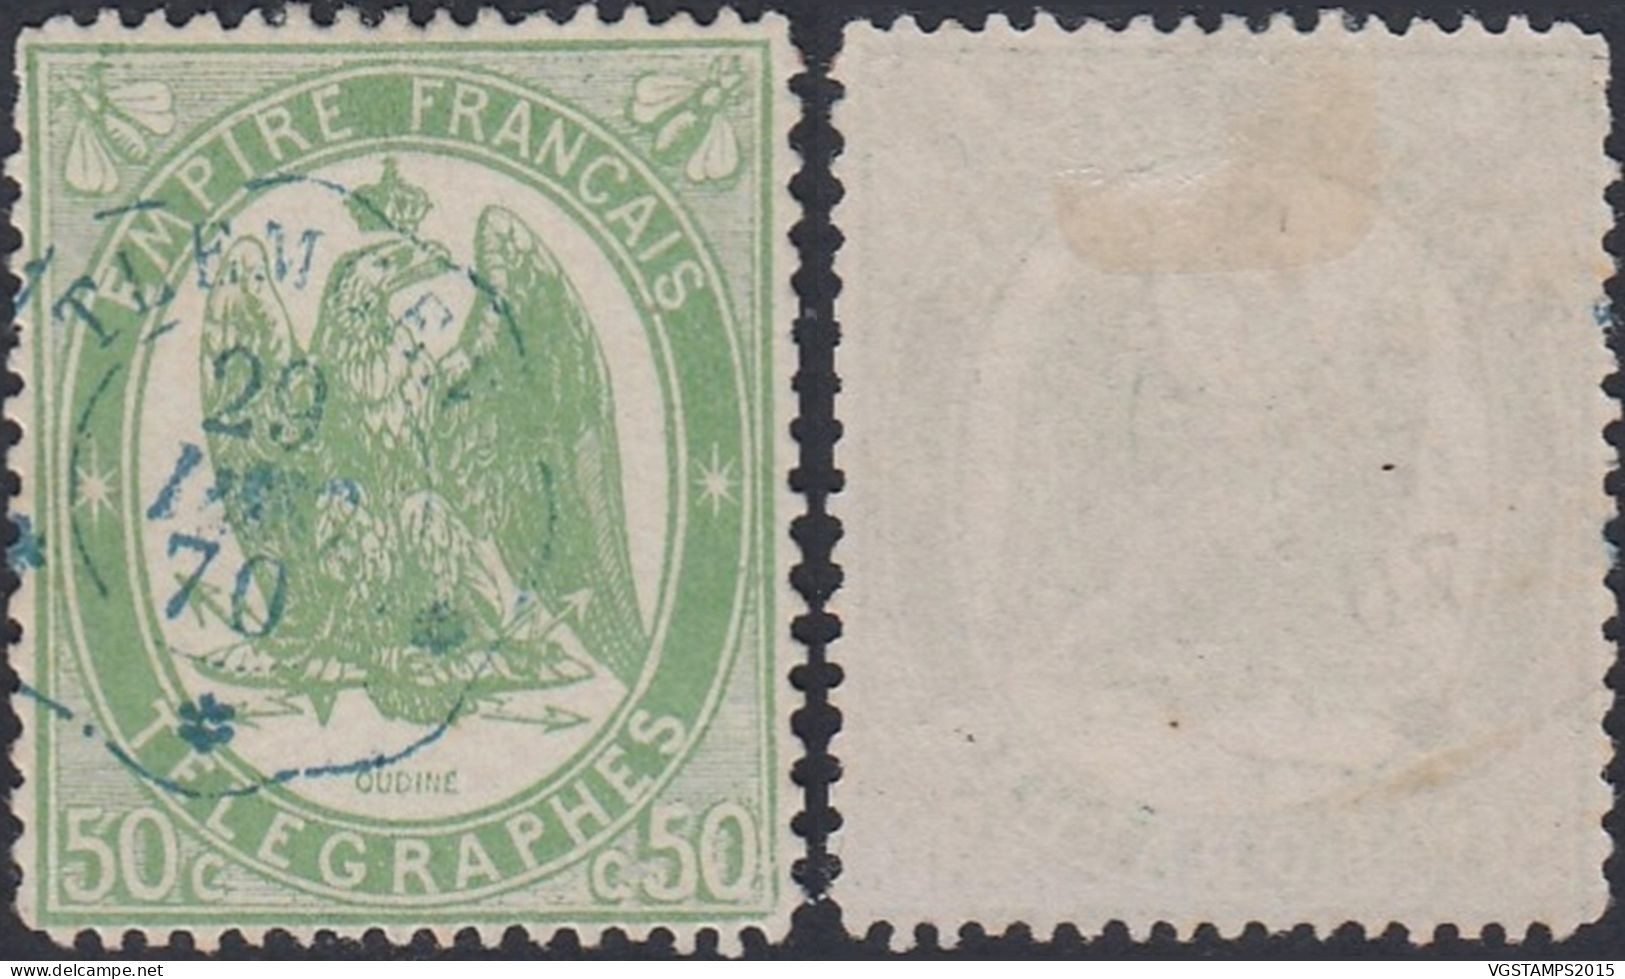 Algérie 1868 (Colonie Française) - Timbre Neuf. Timbre Télégraphe Nr.: 6. Qualité Normale.... (EB) DC-12493 - Poste Aérienne